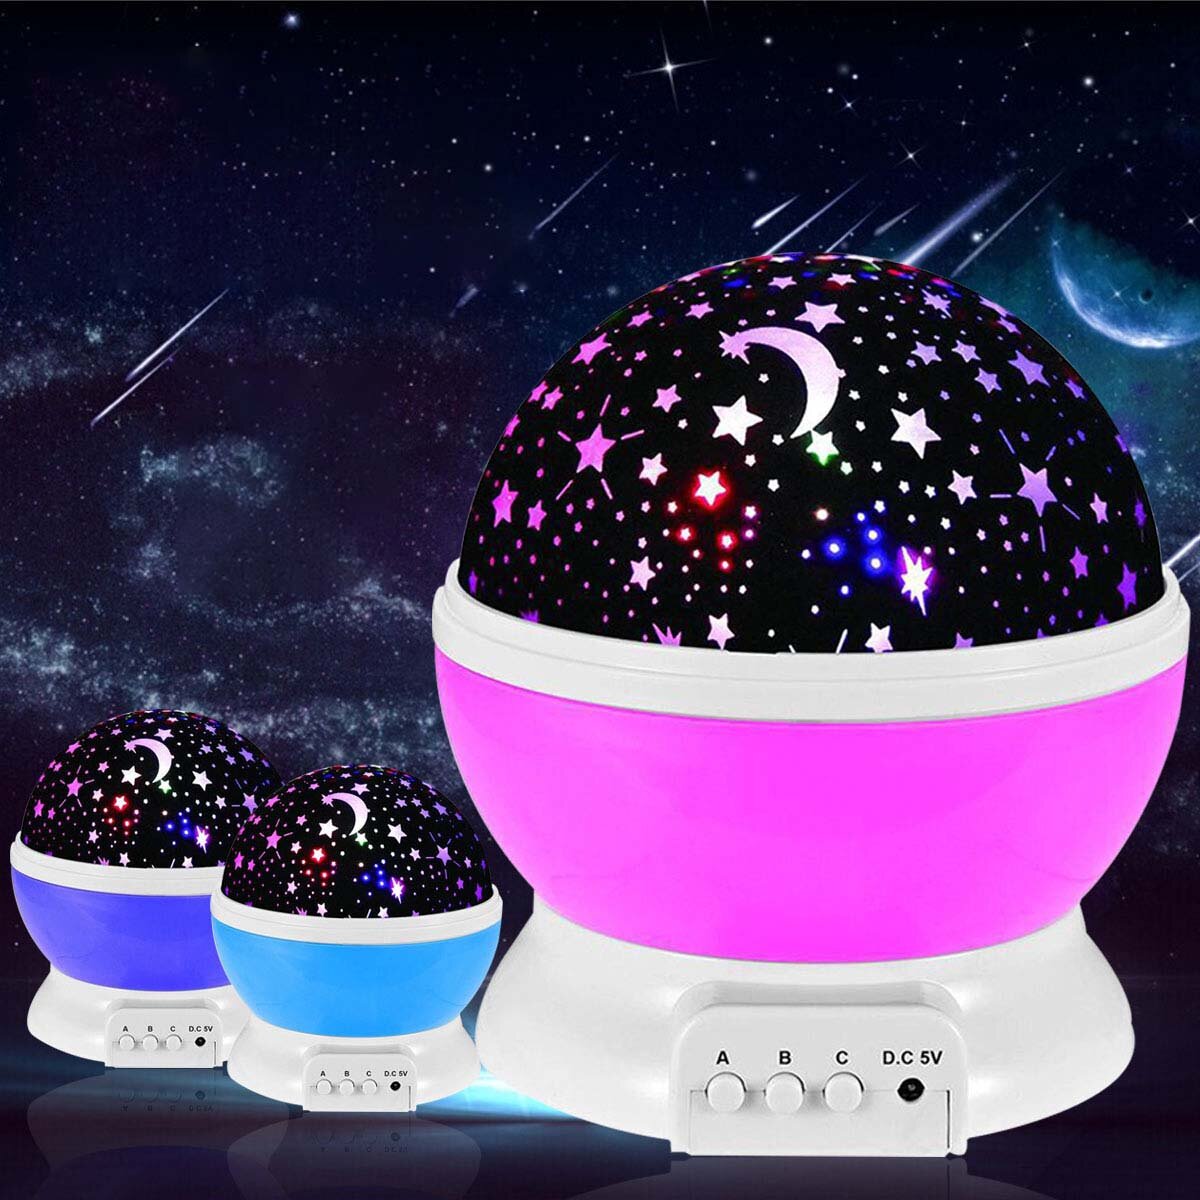 

LED Starry Проектор Лампа Детский ночник USB Романтическая вращающаяся Луна Космос Sky Звездная проекция Лампа Для детей